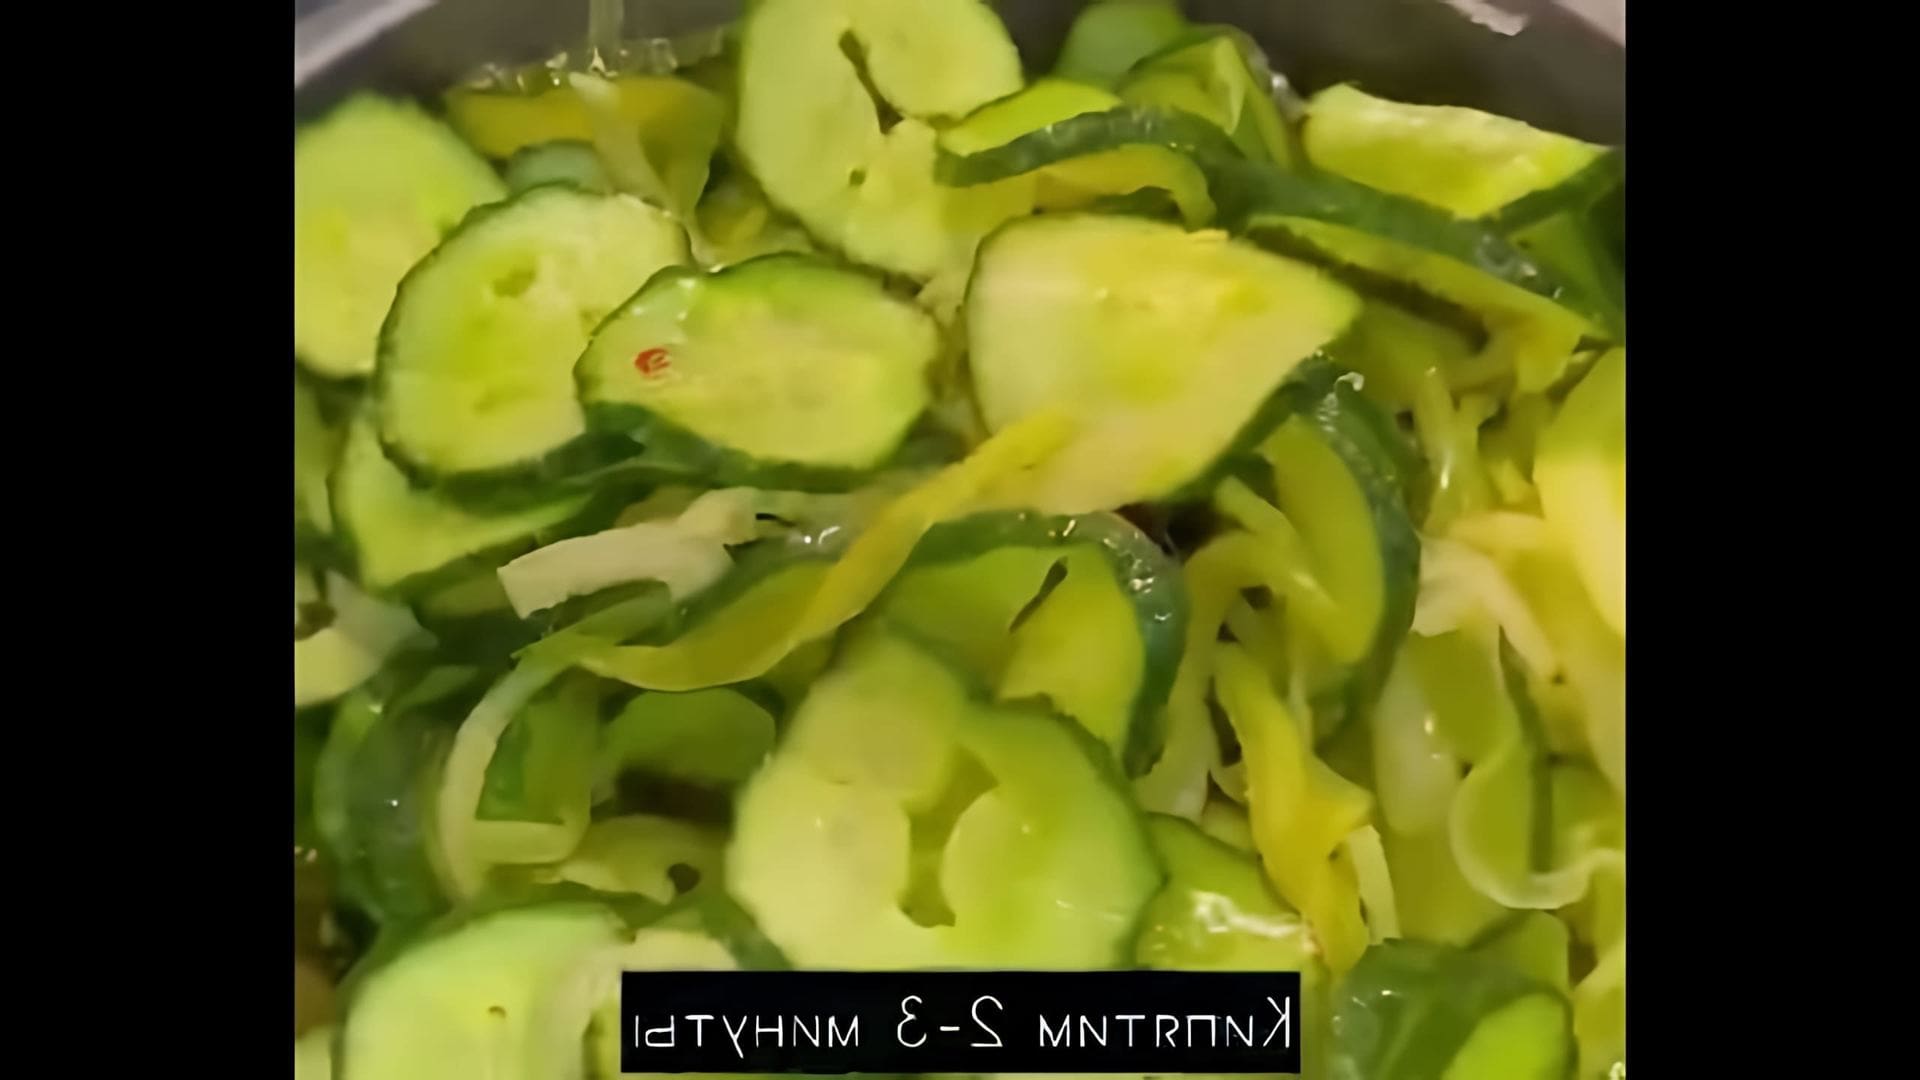 В этом видео демонстрируется рецепт приготовления огурцов пикули, которые можно использовать для бургеров и сэндвичей